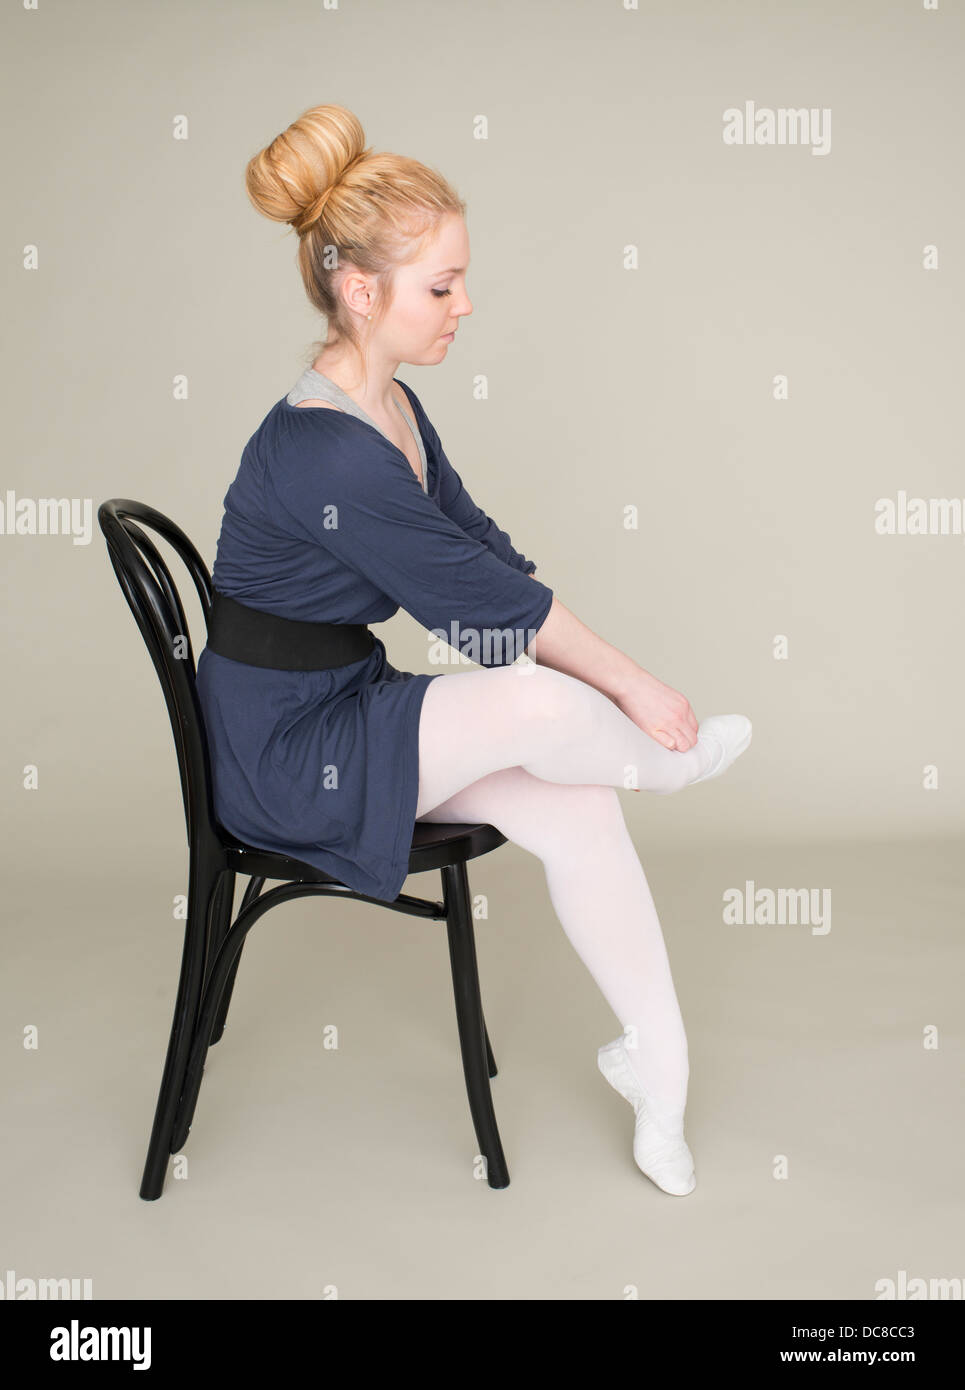 Junge blonde weibliche Teenager im Ballett Kleid sitzend auf Stuhl Massage Fuß Stockfoto